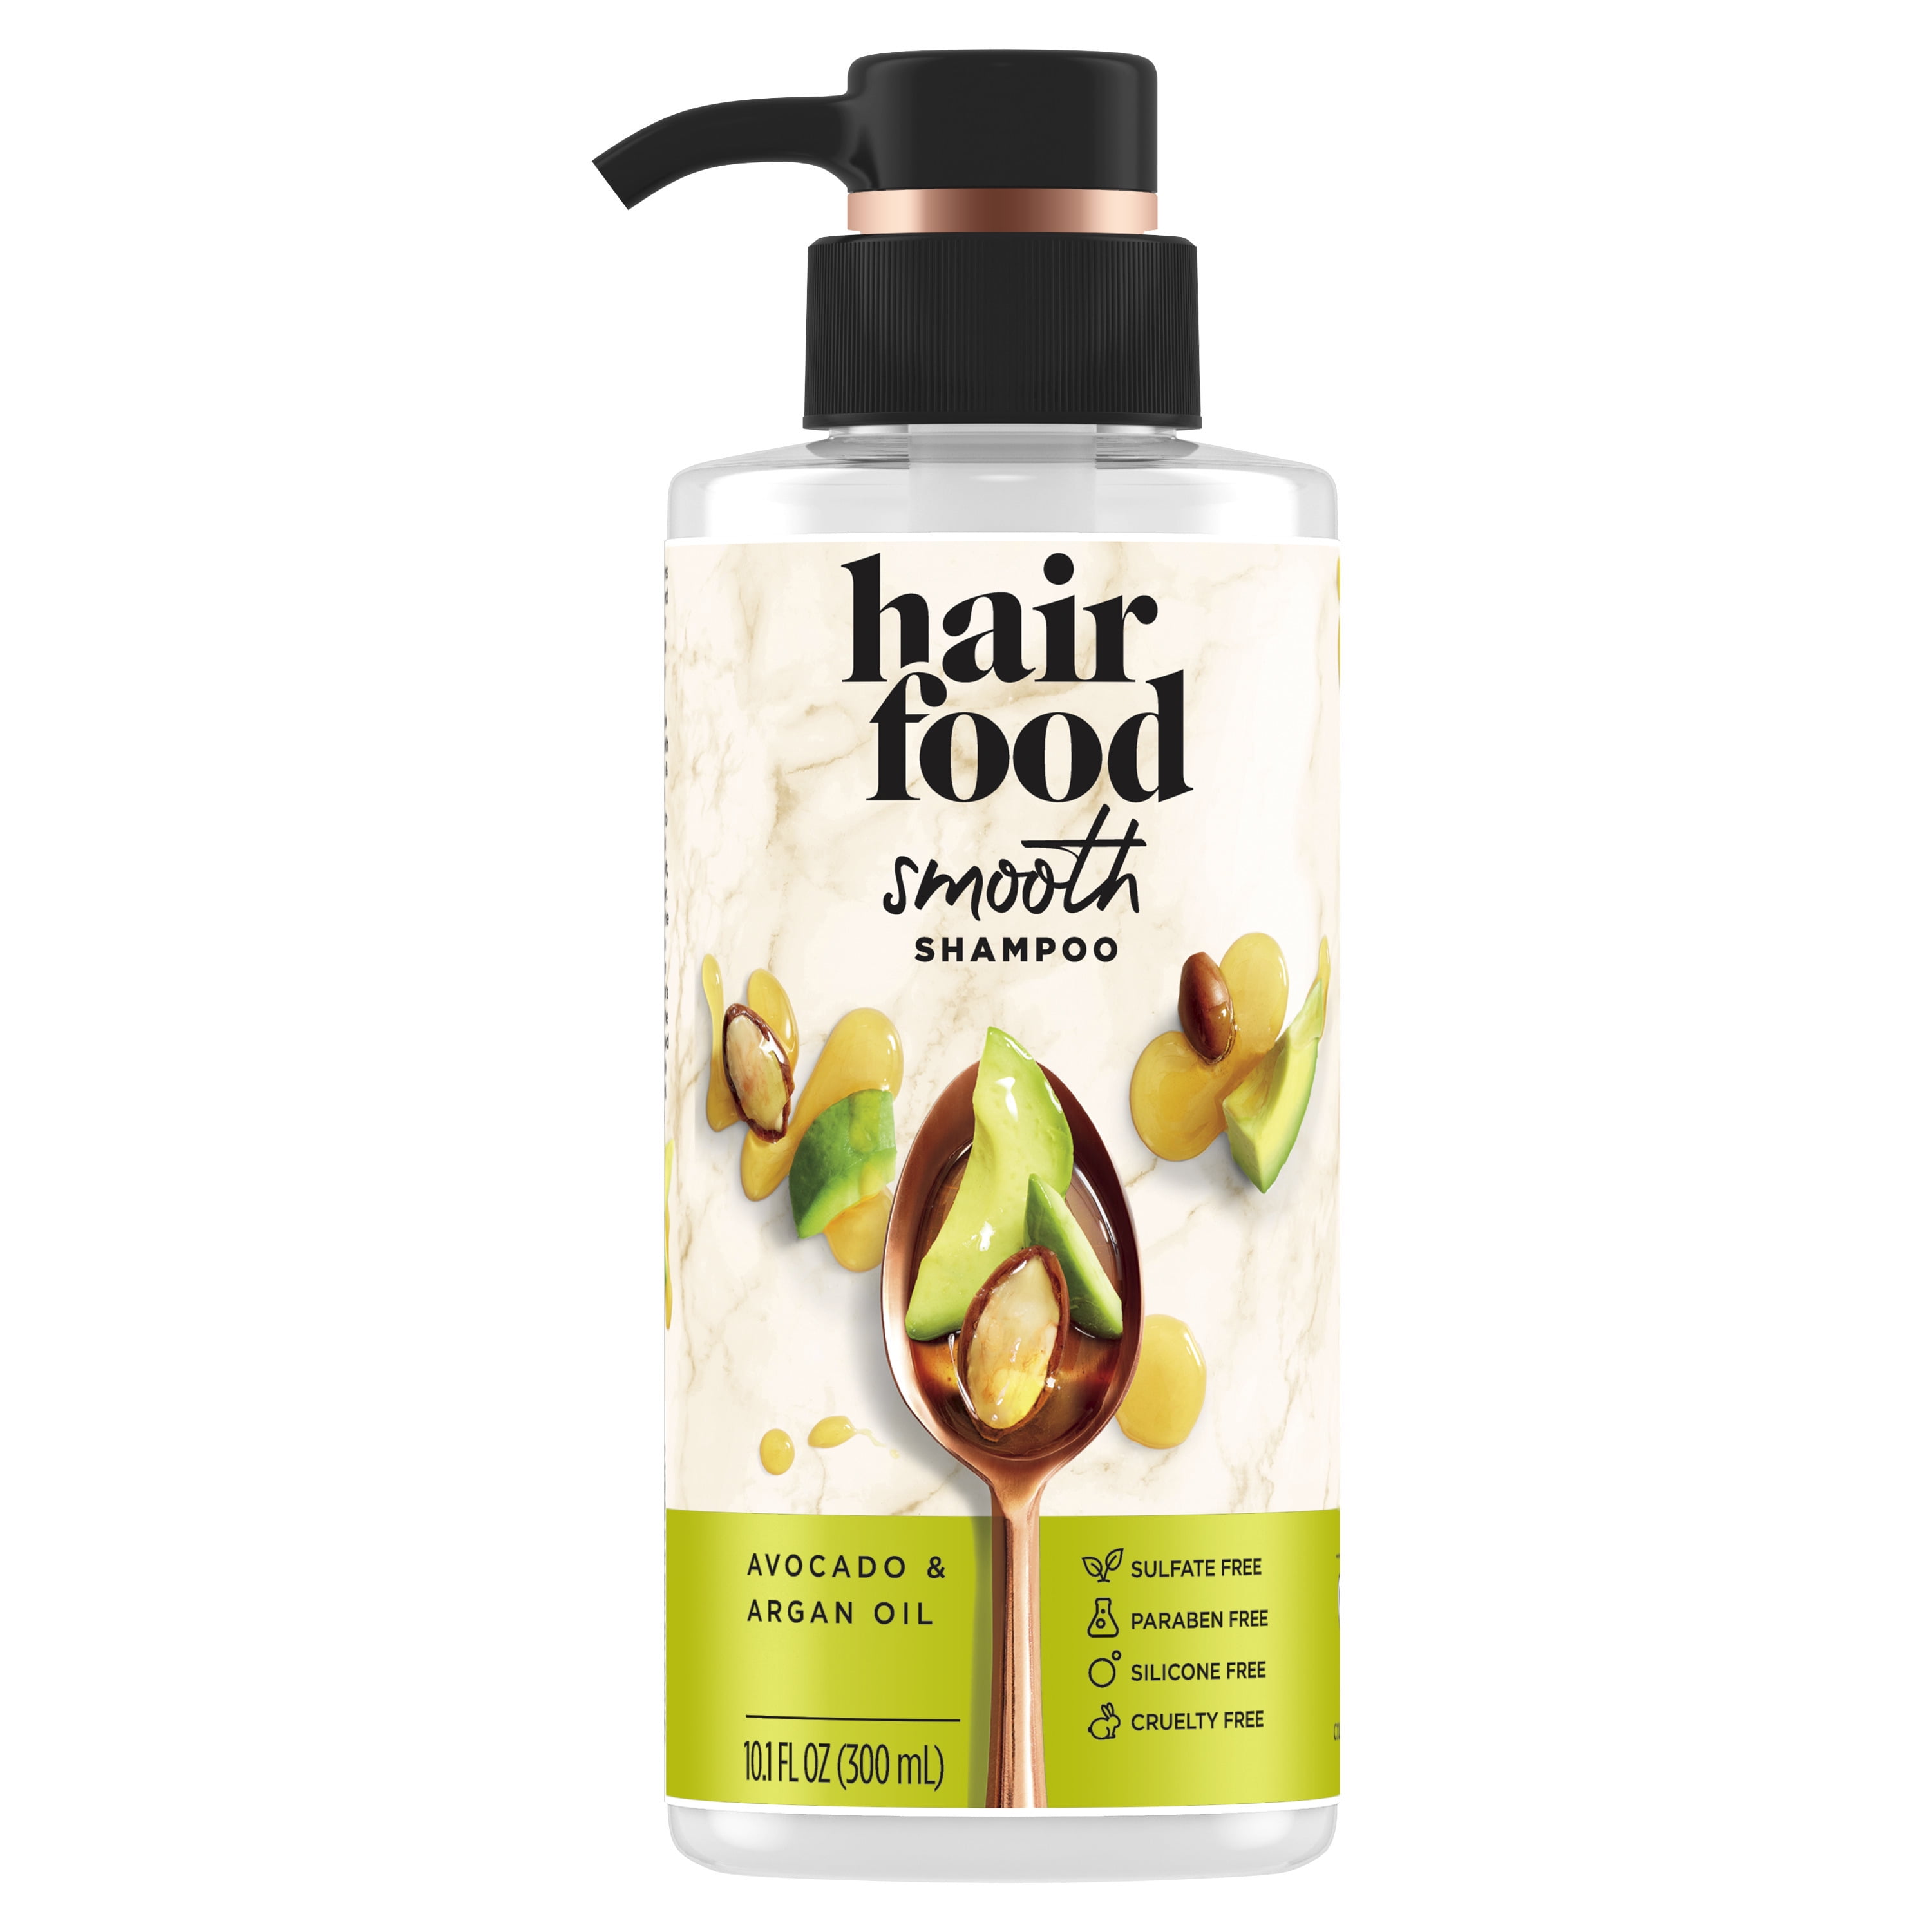 Hair Food Smooth Shampoo, Avocado Argan Oil, Sulfate Free, 10.1 fl oz